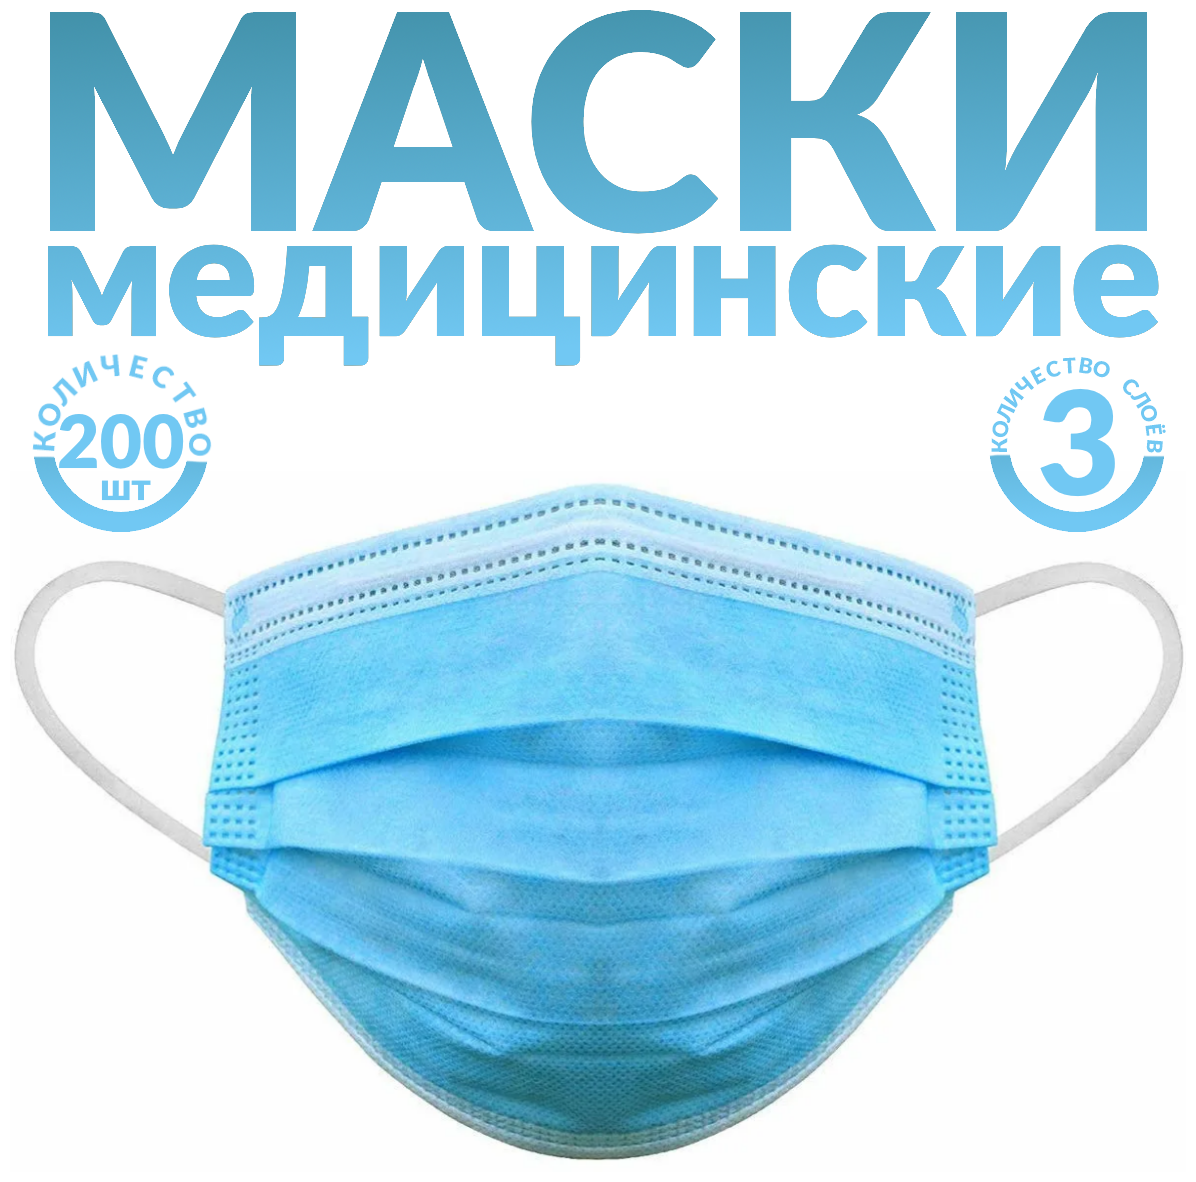 Одноразовые маски трёхслойные, 200 шт., голубые (гигиенические маски медицинские из нетканного материала)